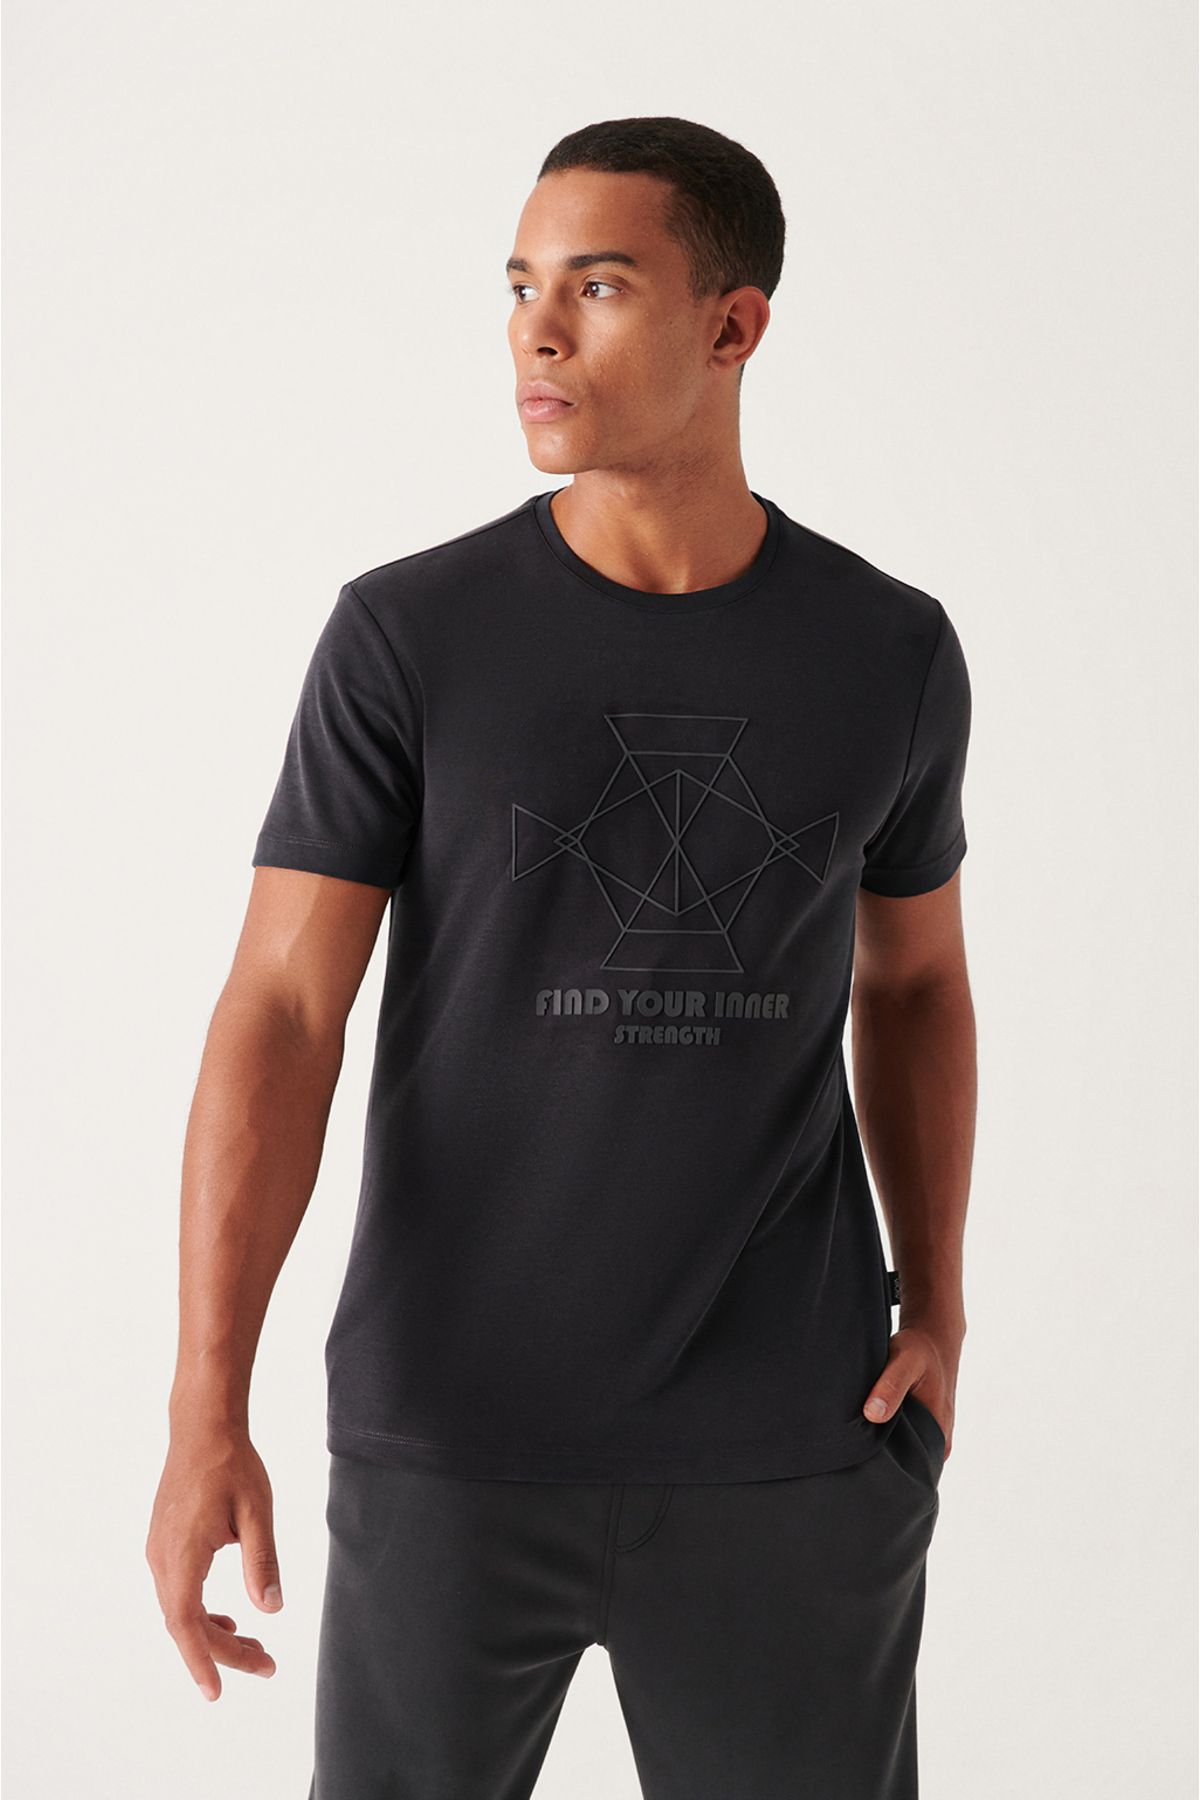 Avva Erkek Antrasit Yumuşak Tuşeli Baskılı Modal T-shirt A21y1051